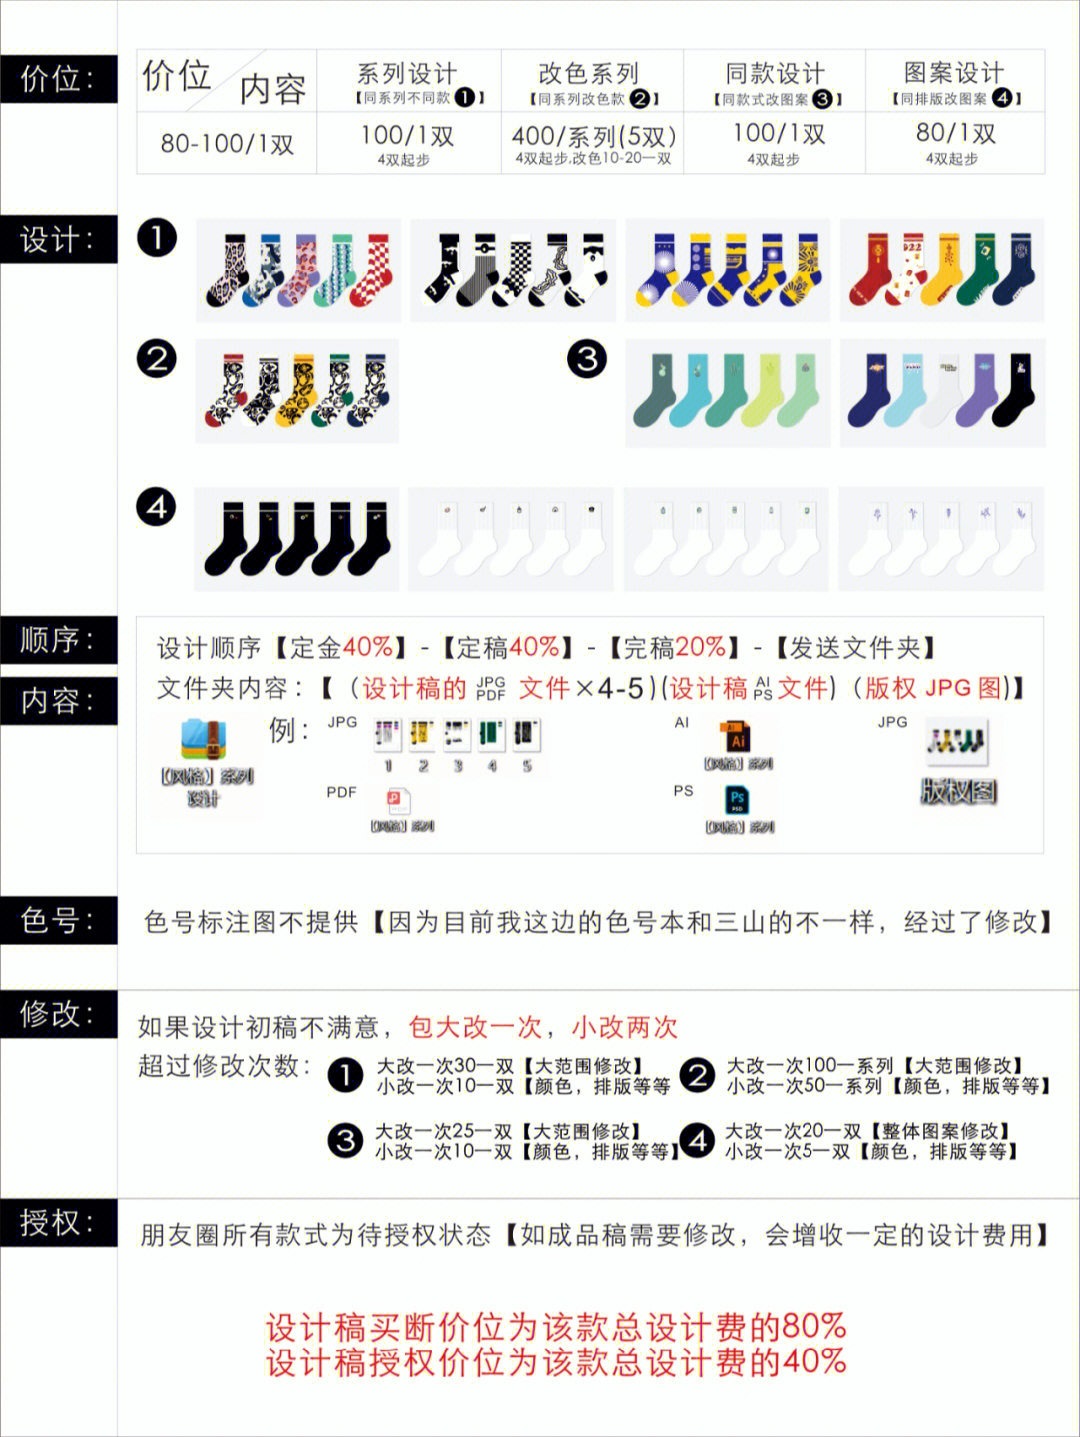 袜子设计软件图片